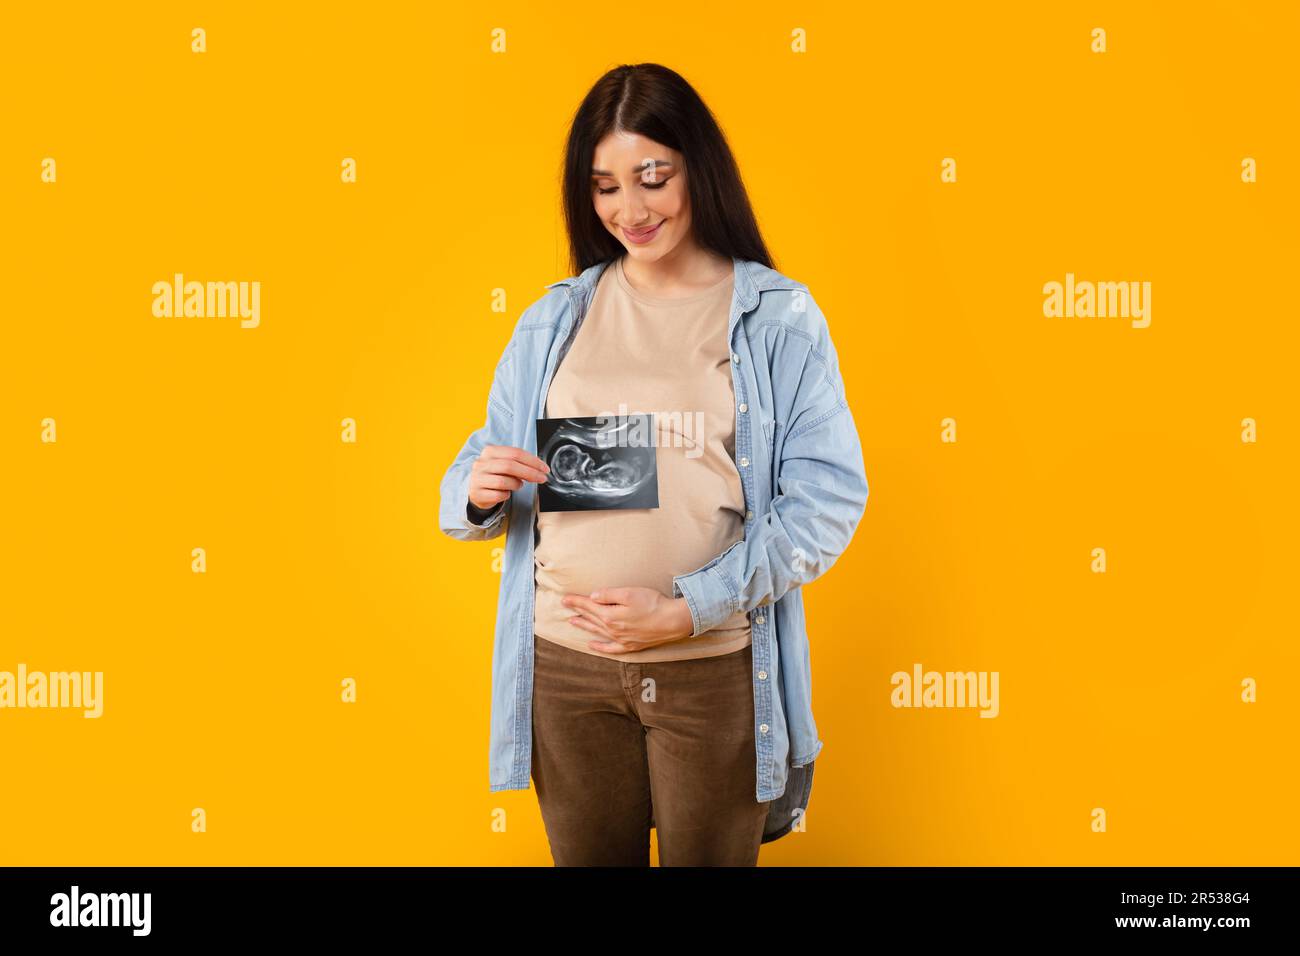 Jeune femme enceinte excitée embrassant le ventre et montrant une image échographique du bébé à naître sur le backgorund jaune Banque D'Images